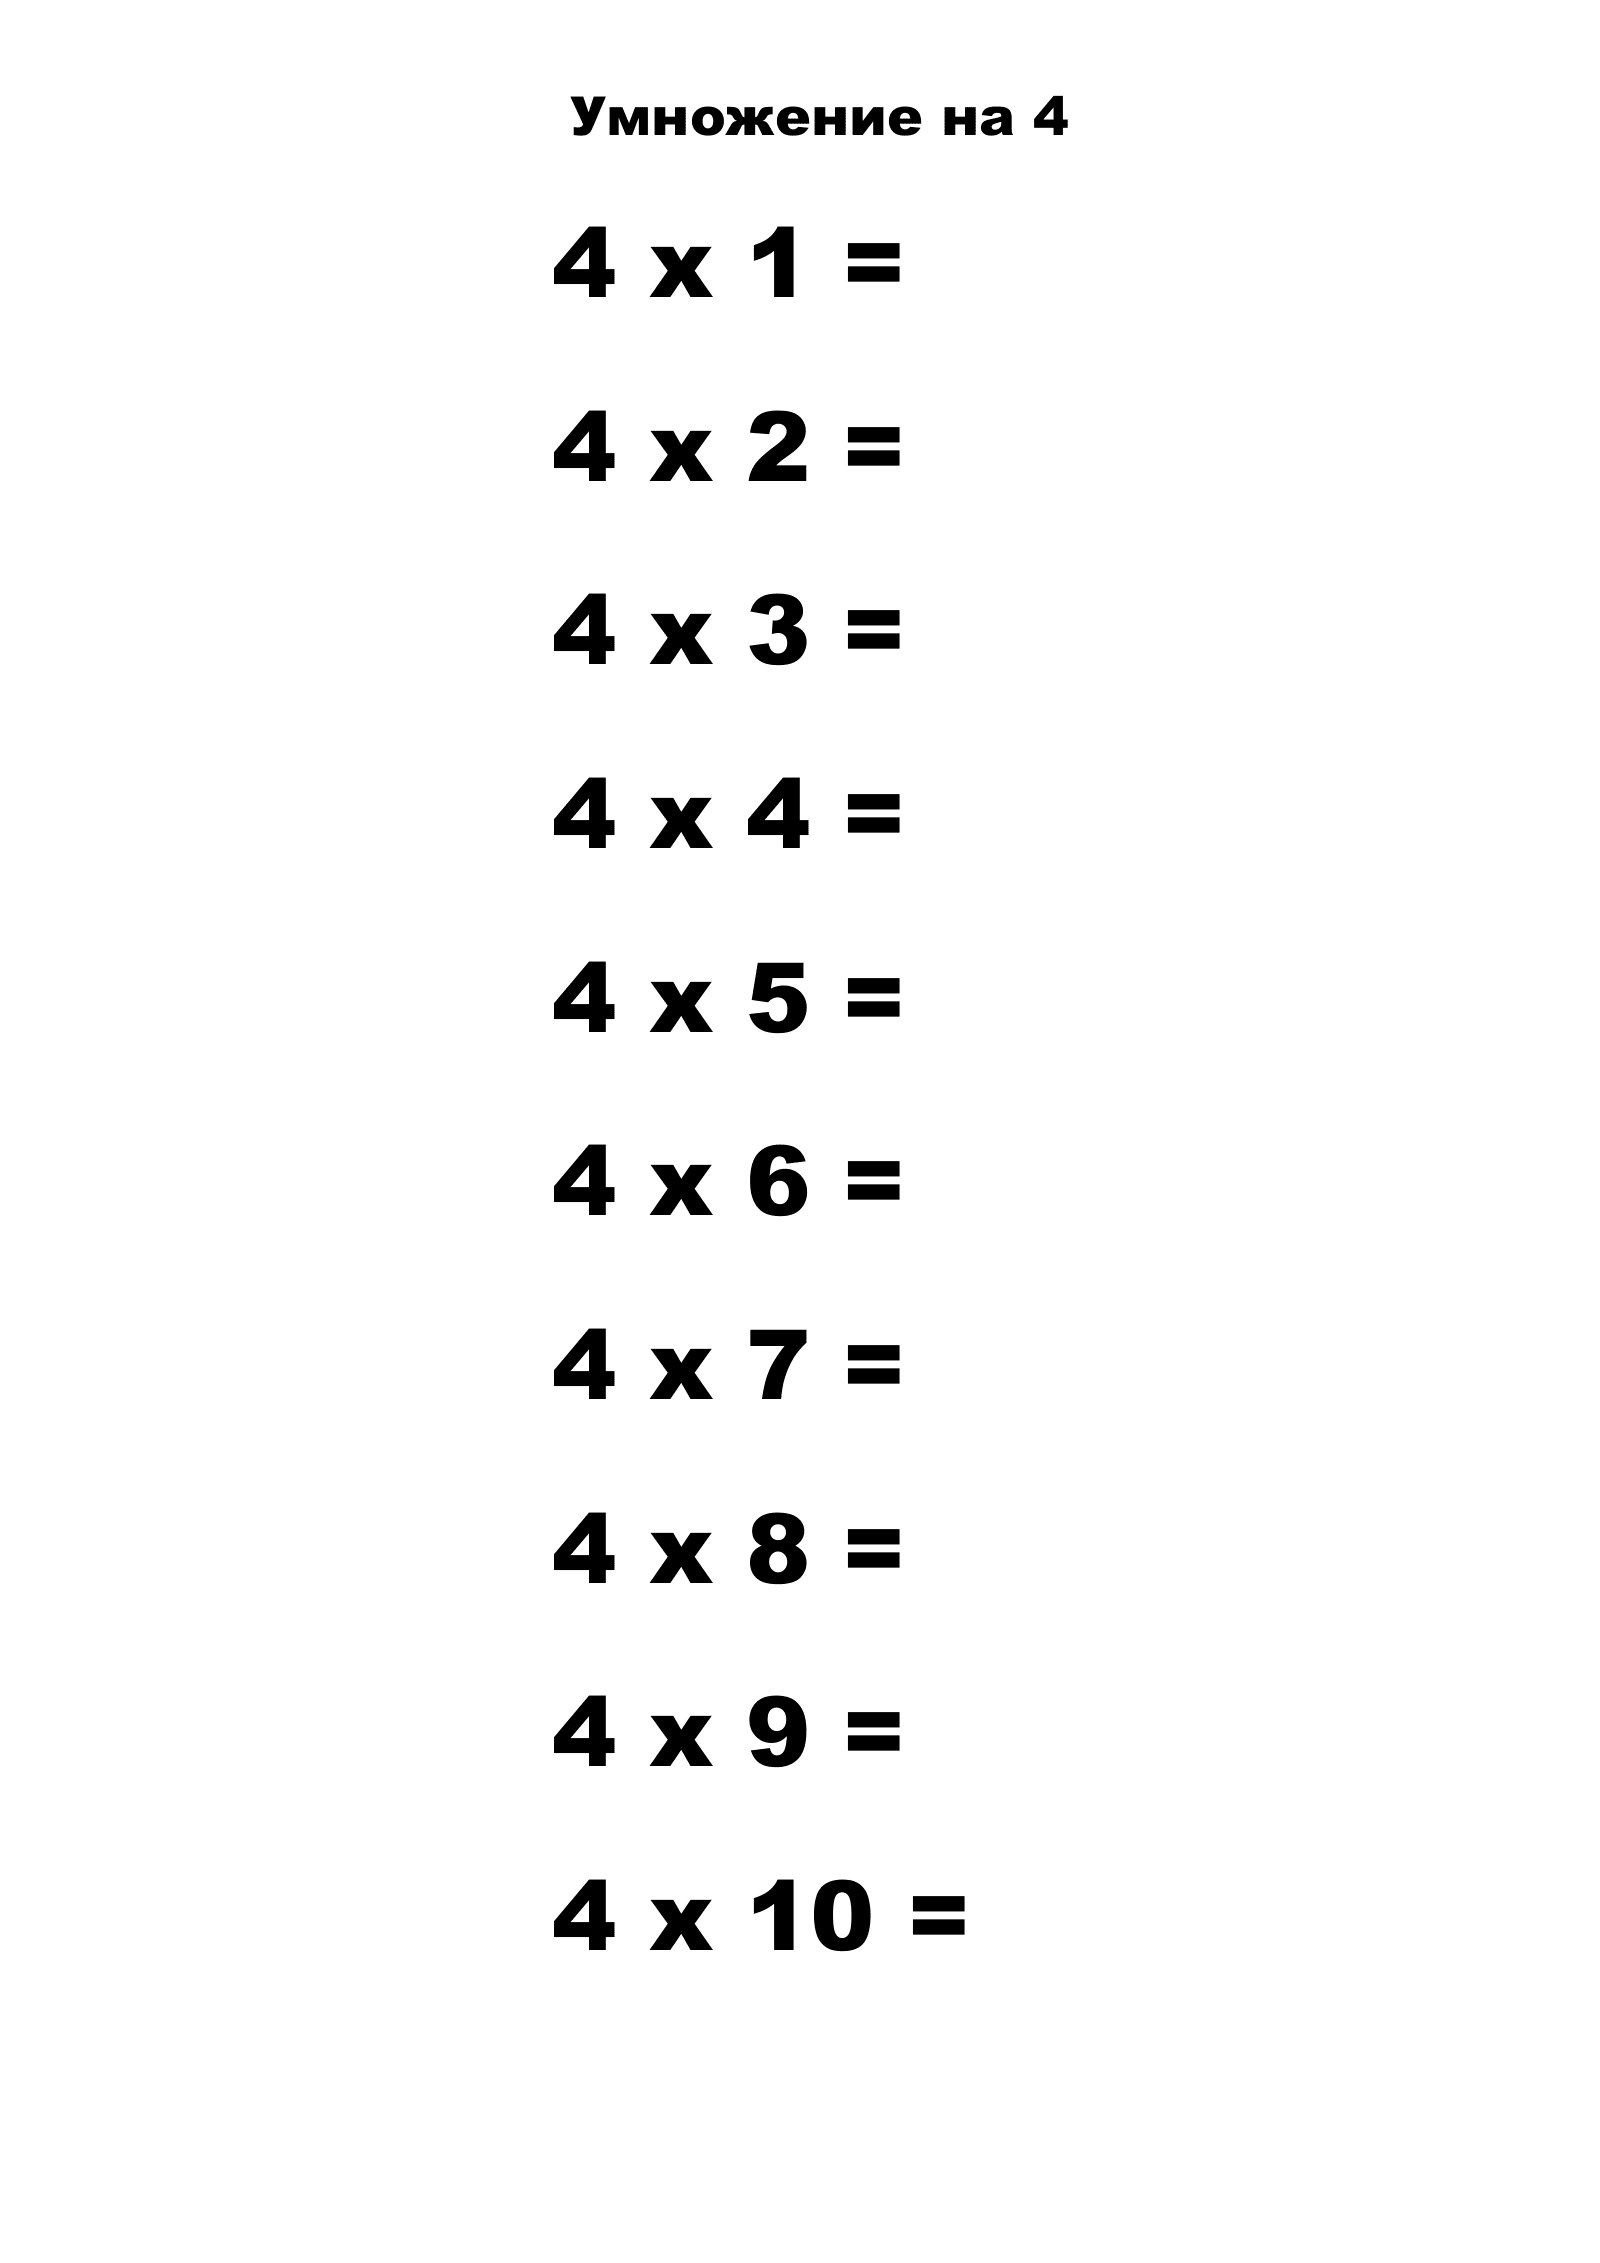 Таблица умножения на 4 без ответов. Распечатать